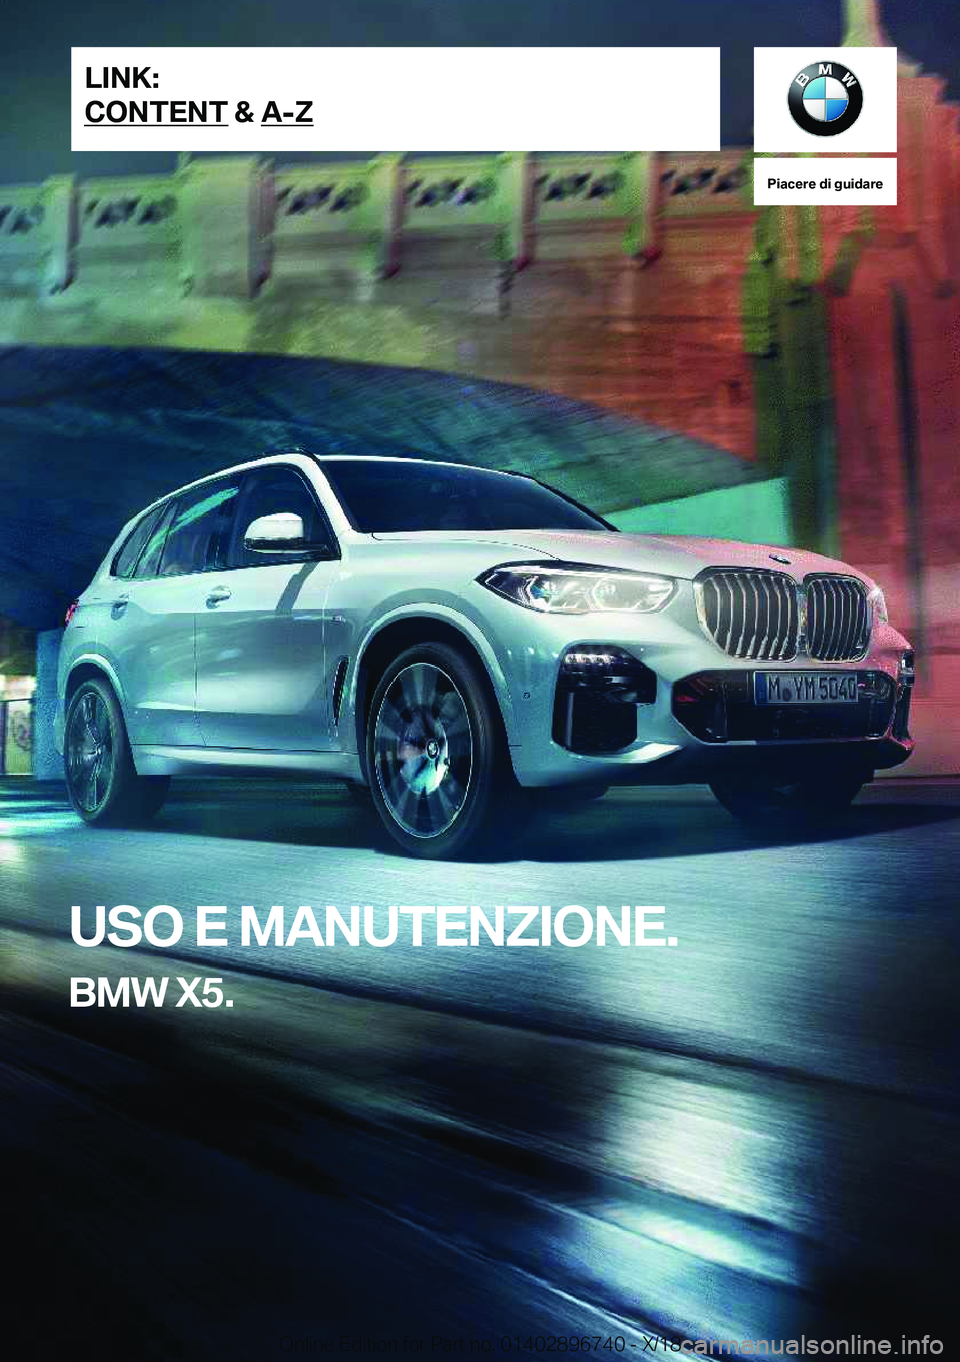 BMW X5 2019  Libretti Di Uso E manutenzione (in Italian) �P�i�a�c�e�r�e��d�i��g�u�i�d�a�r�e
�U�S�O��E��M�A�N�U�T�E�N�Z�I�O�N�E�.
�B�M�W��X�5�.�L�I�N�K�:
�C�O�N�T�E�N�T��&��A�-�Z�O�n�l�i�n�e��E�d�i�t�i�o�n��f�o�r��P�a�r�t��n�o�.��0�1�4�0�2�8�9�6�